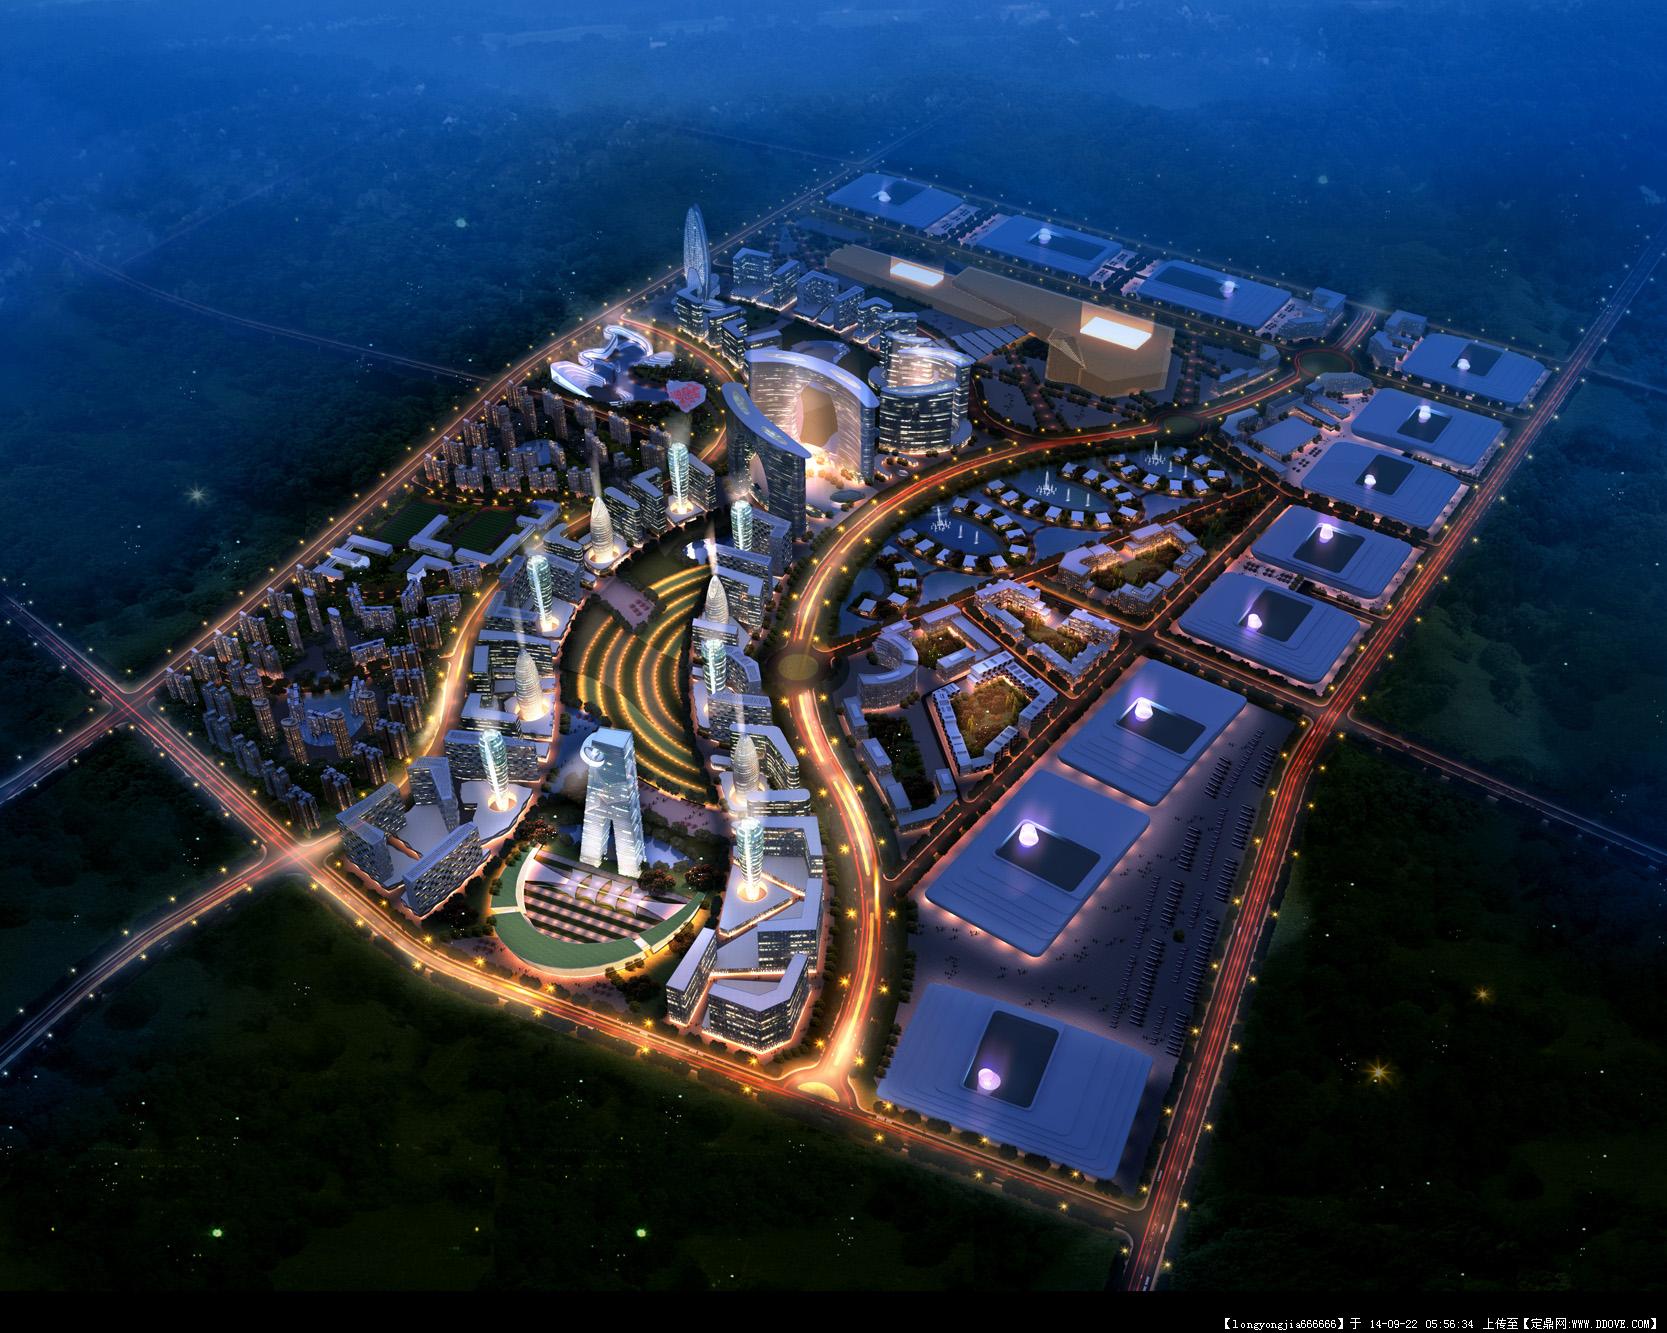 时评:应积极传承中国优秀城市规划传统